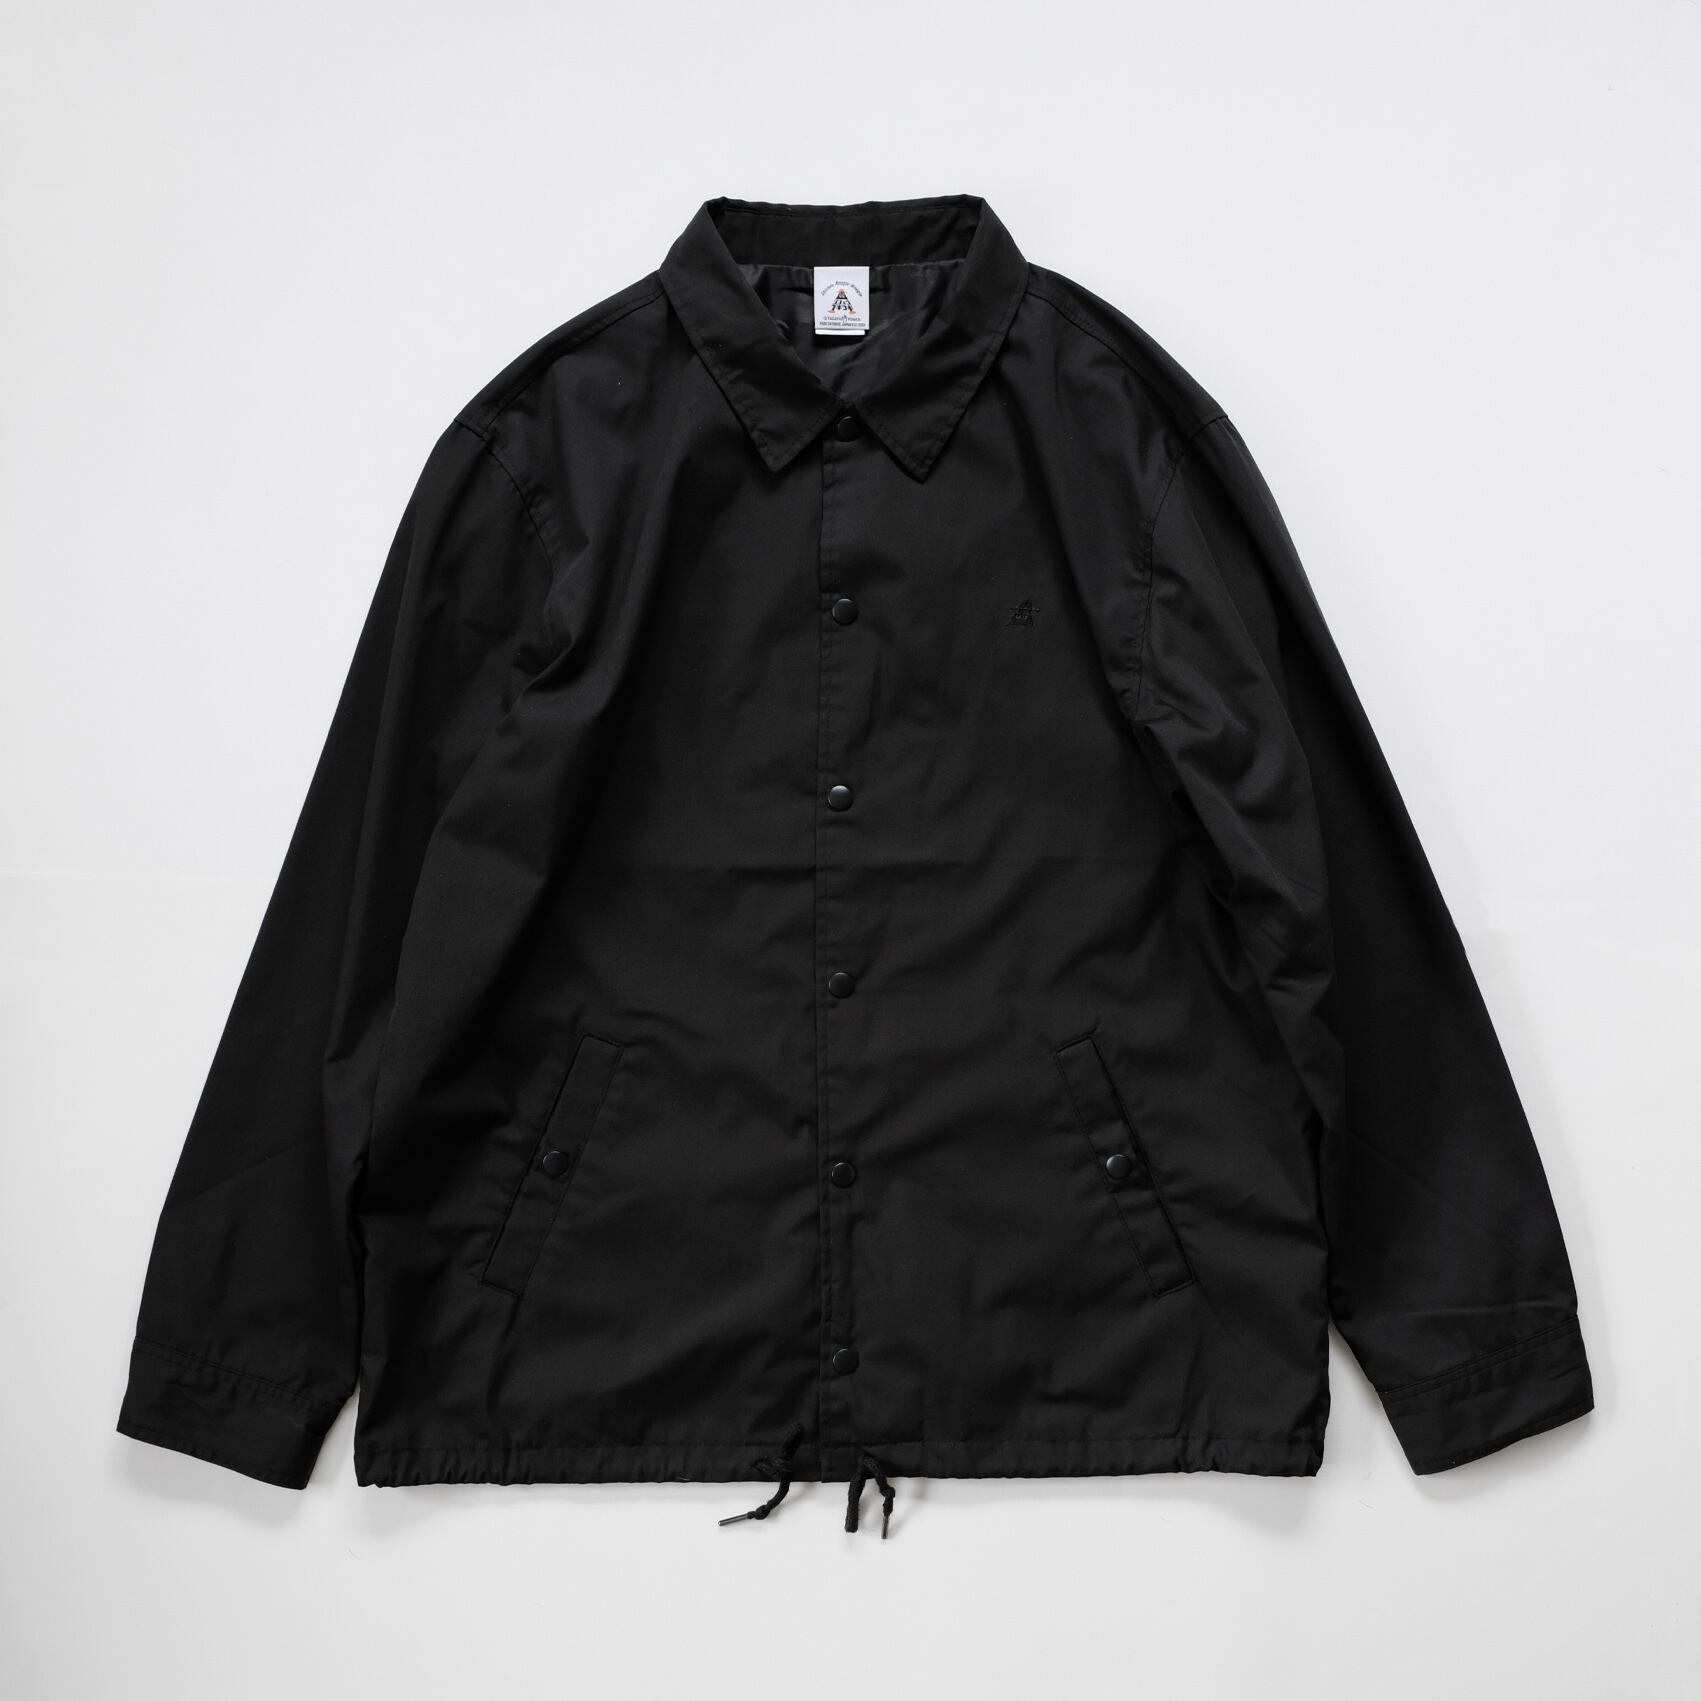 Black Coach Jacket